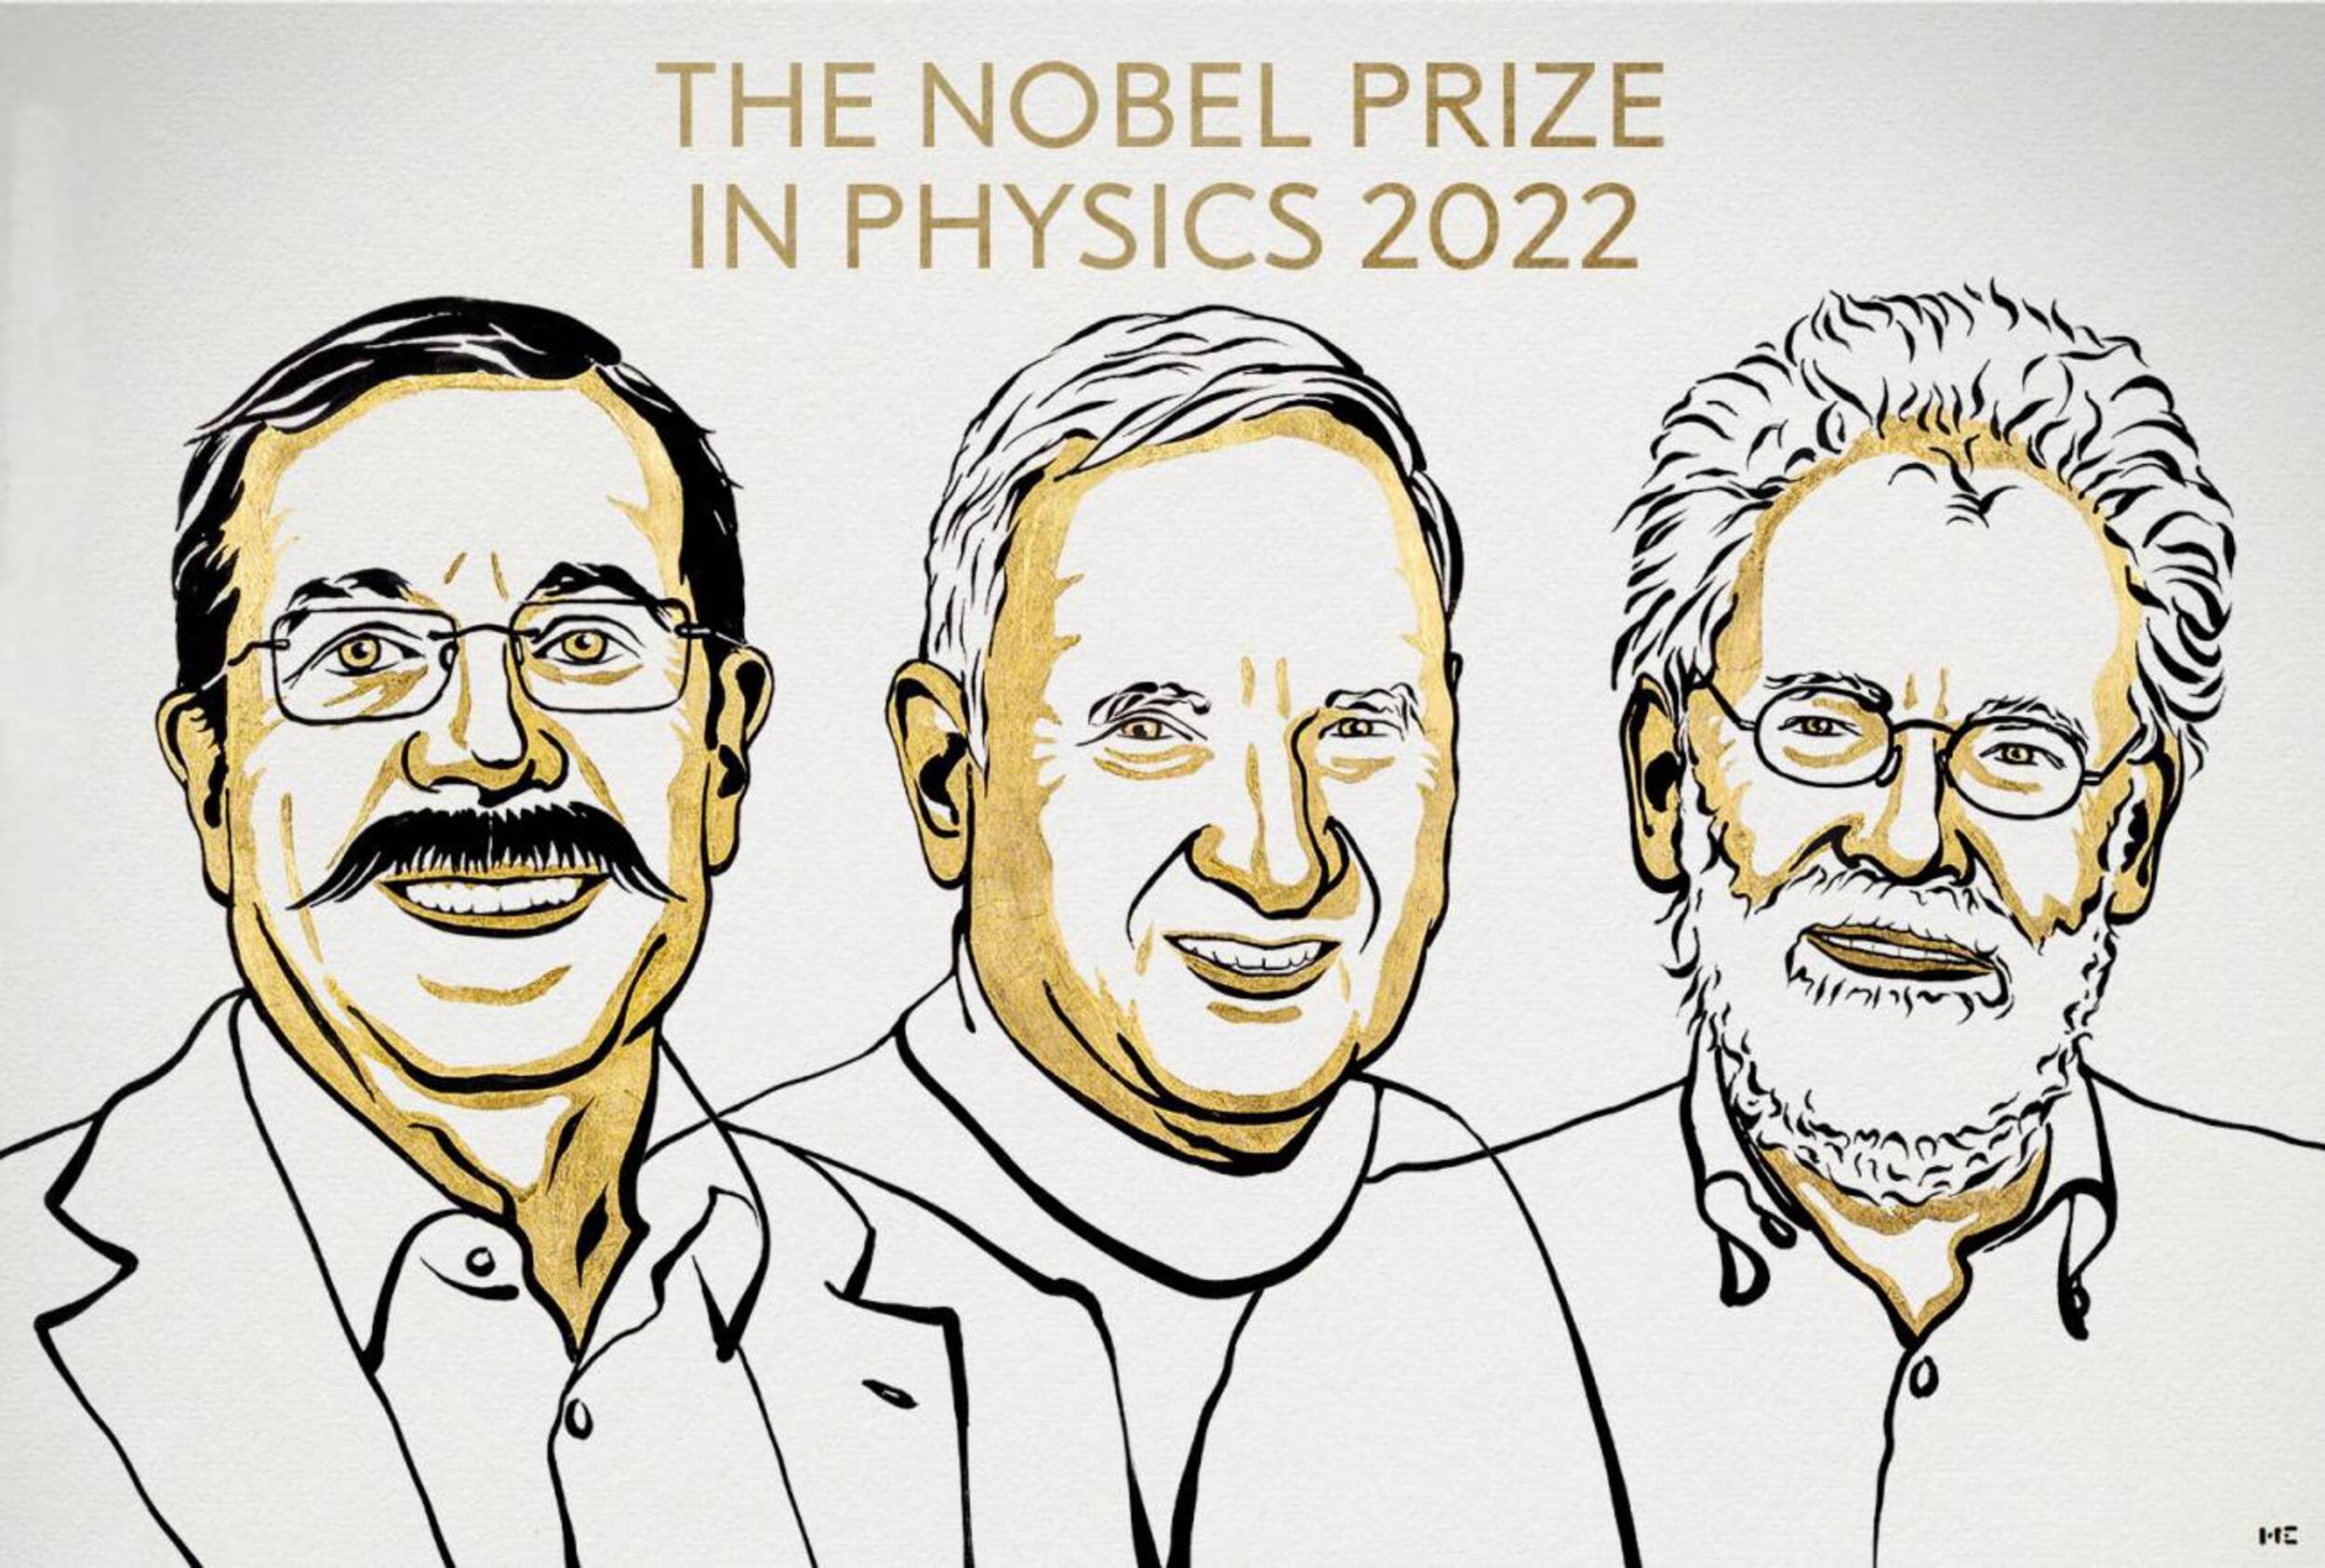 Los pioneros del entrelazamiento cuántico reciben el Nobel de Física 2022